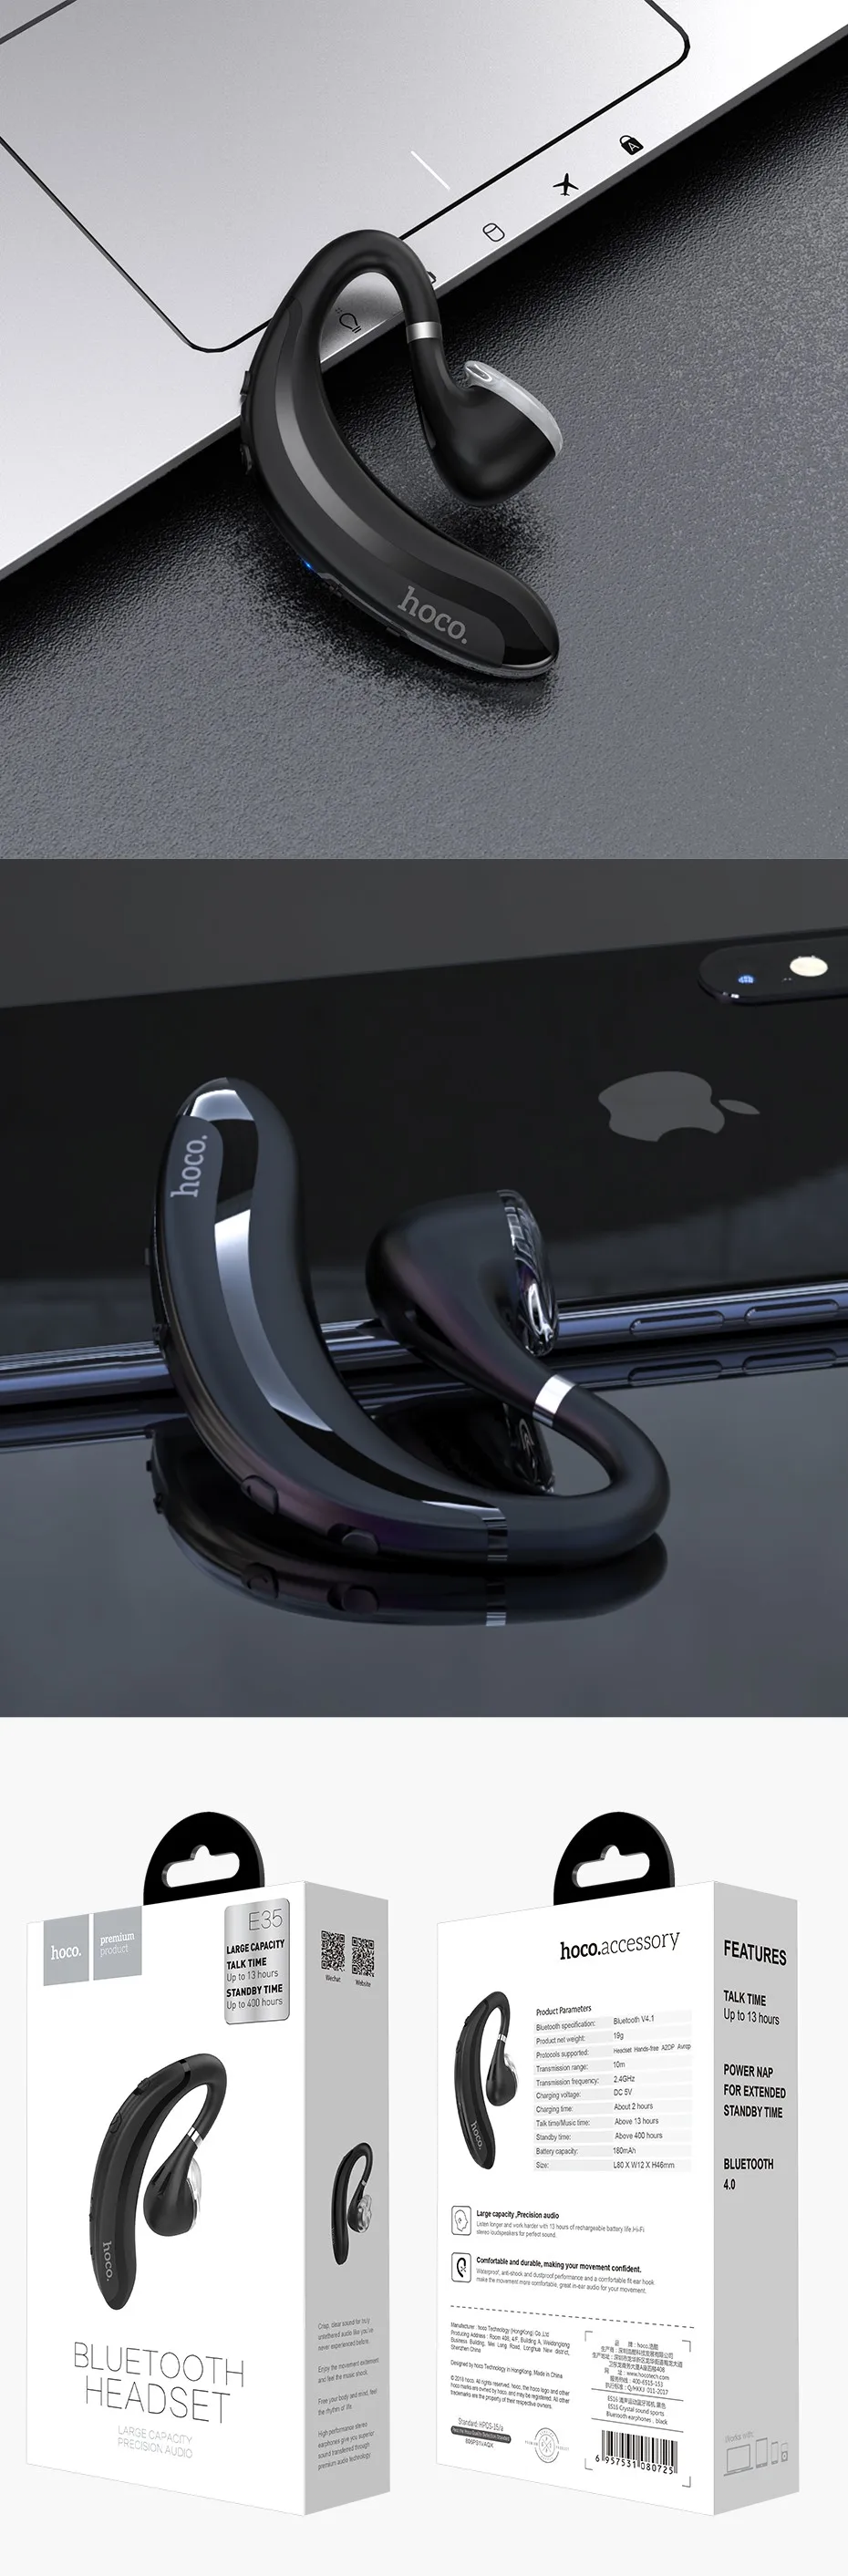 НОСО Беспроводной наушники Bluetooth наушник с зацепкой на ухо безболезненно гарнитура Blutooth наушник-таблетка системы беспроводной голосовой связи с микрофоном для телефона iPhone Xiaomi